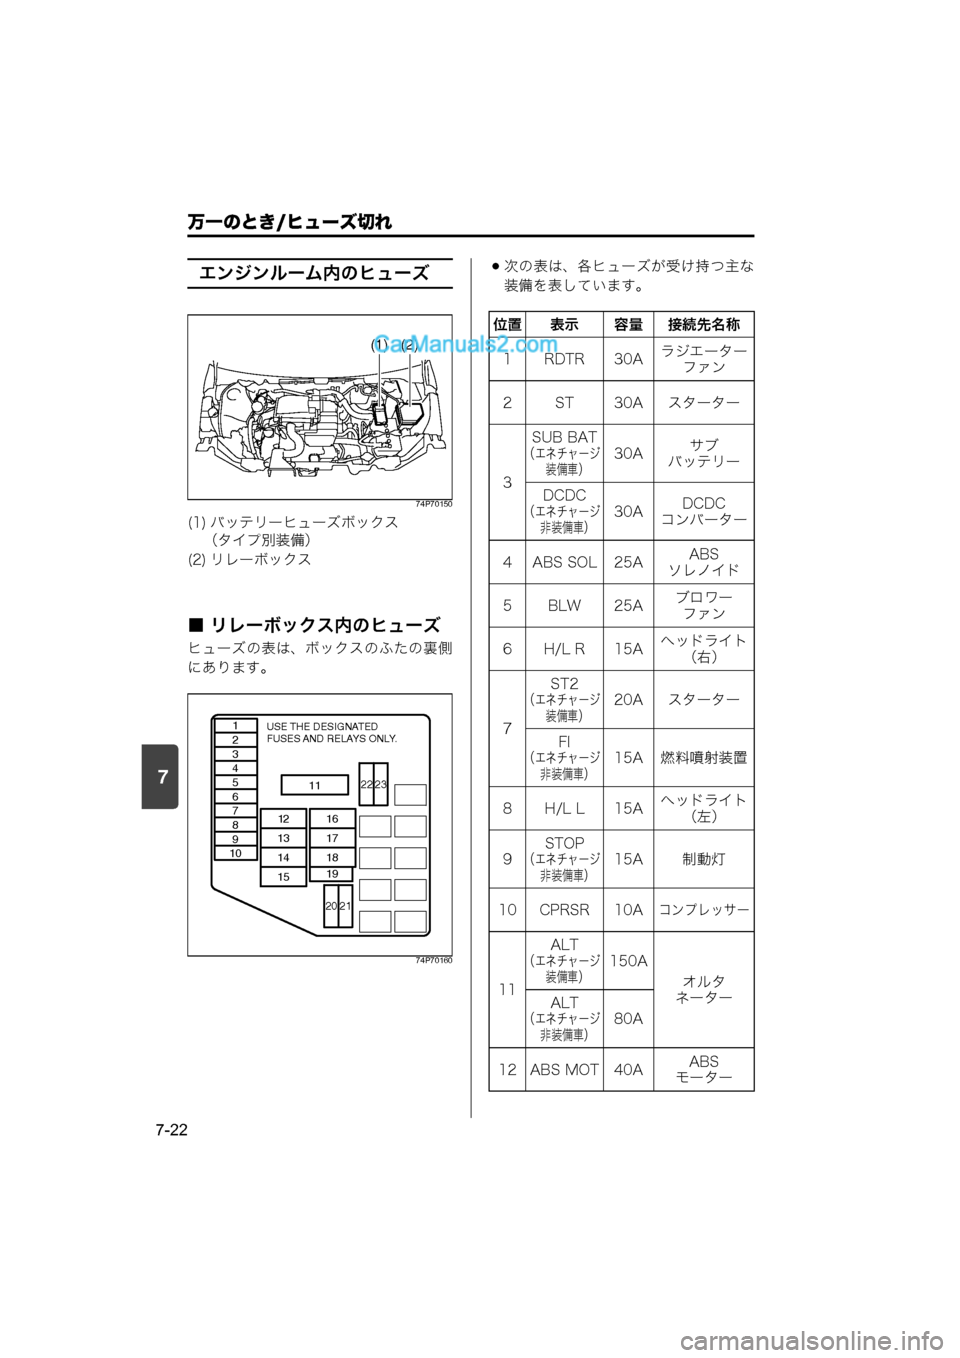 MAZDA MODEL CARROL 2015  取扱説明書 (キャロル) (in Japanese) 7
万一のとき/ヒューズ切れ
7-22
エンジンルーム内のヒューズ
74P70150
■ リレーボックス内のヒューズ
ヒューズの表は、ボックスのふたの裏側
にあり�